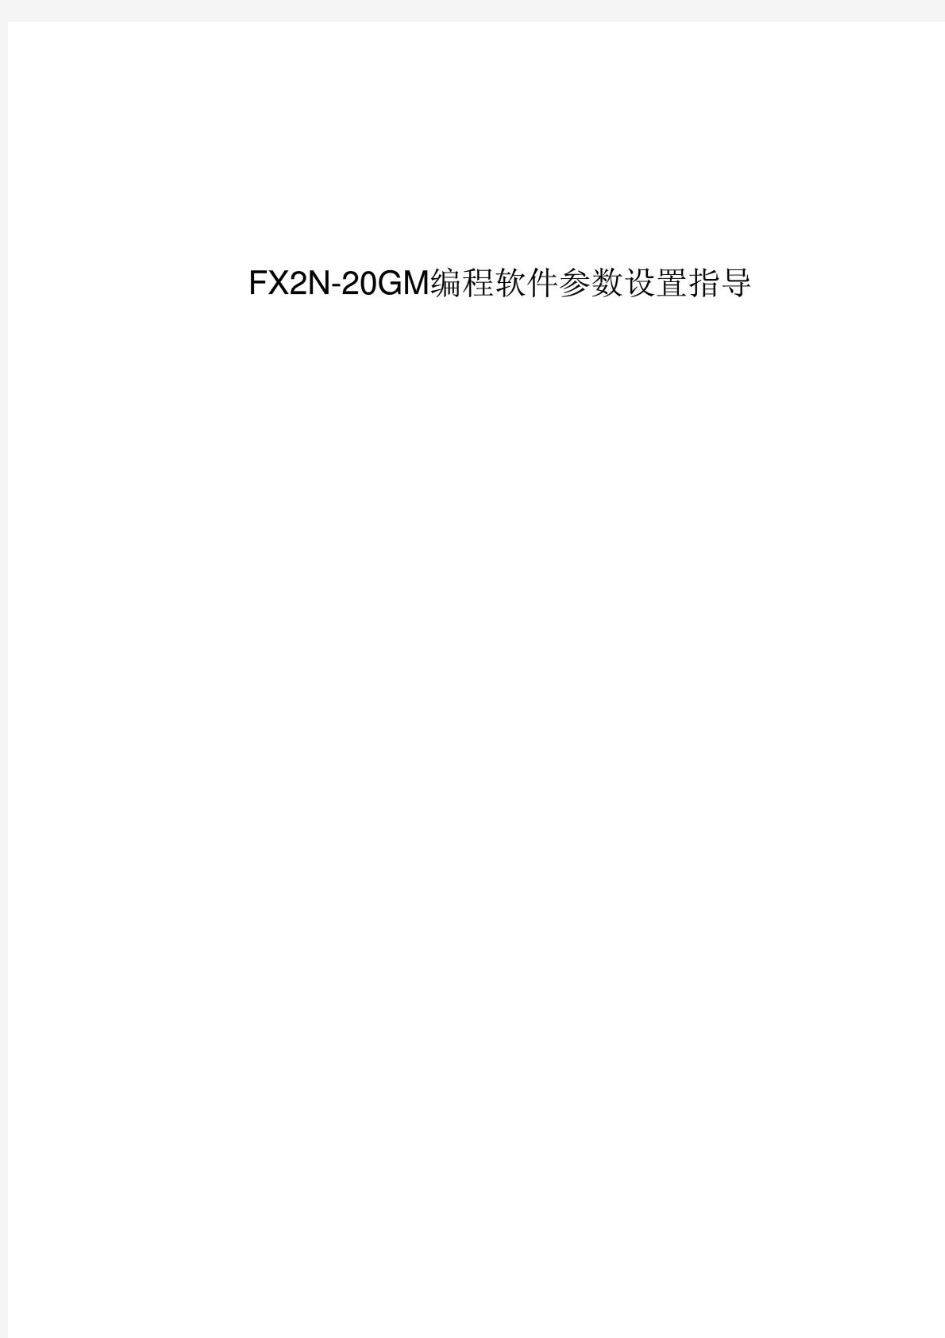 三菱 -FX2N-20GM软件参数设置手册